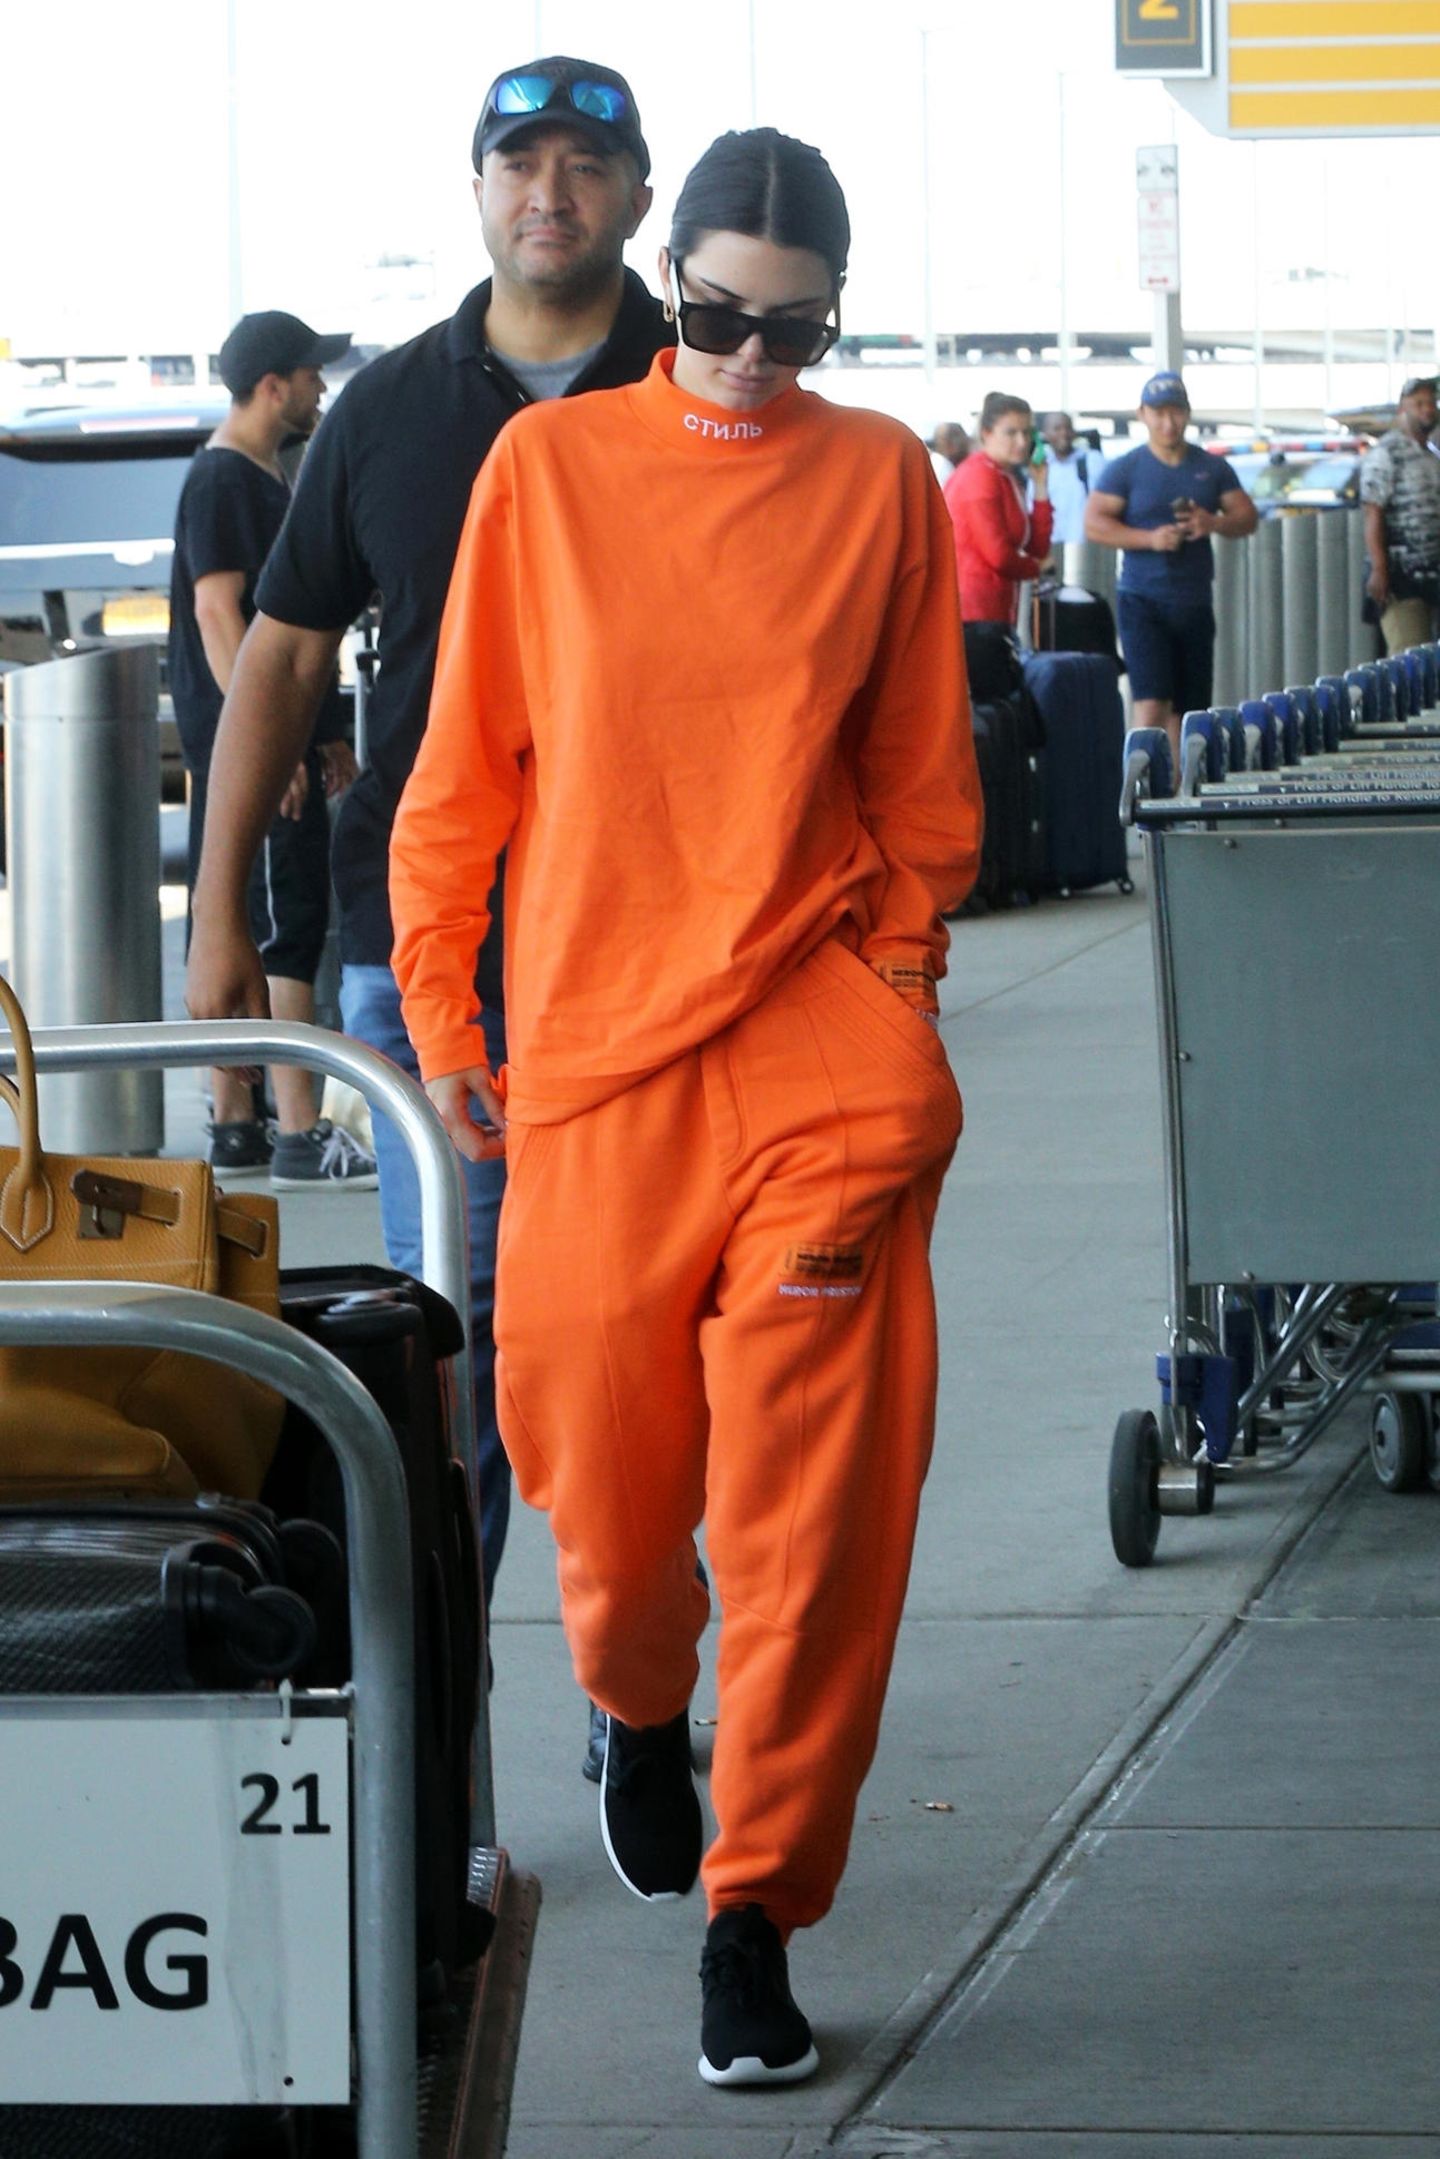 Ob Kendall Jenner wohl Fan der Frauengefängnis-Serie "Orange Is The New Black" ist? Der knallige Jogginganzug im Jailhouse-Look lässt das zumindest vermuten.